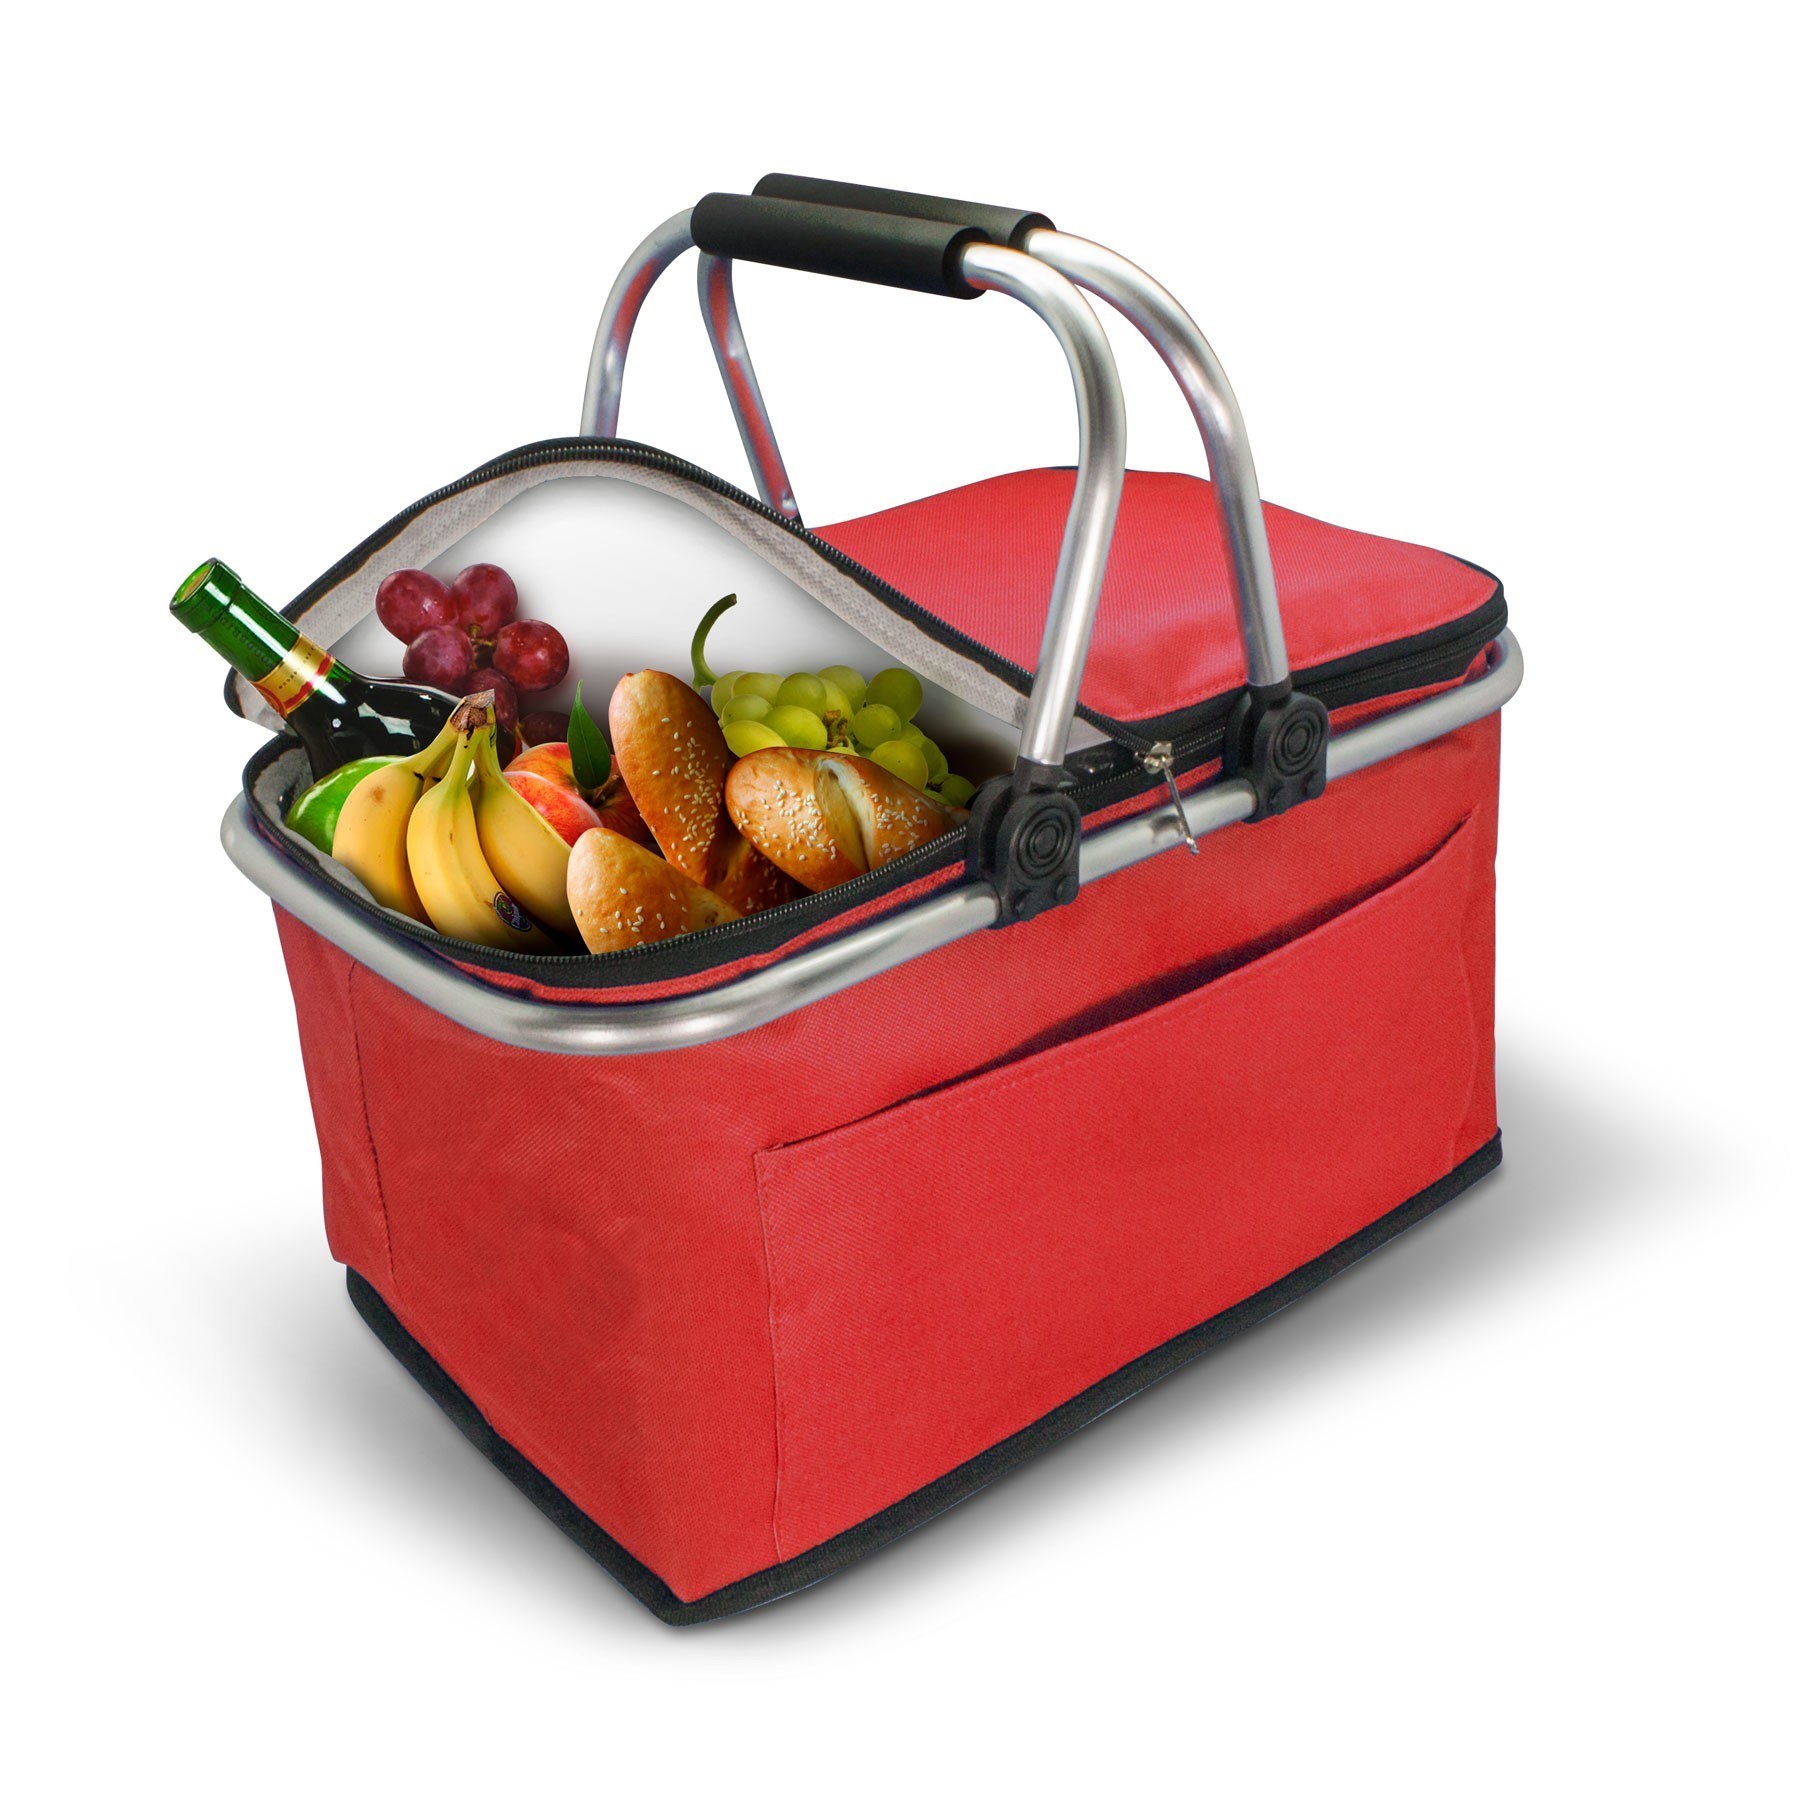 Custom-Insulated-Thermal-Folding-Basket-Food-Delivery-Picnic-Camping-Handbag-Lunch-Basket-Cooler-Bag-Picnic-Basket (3)